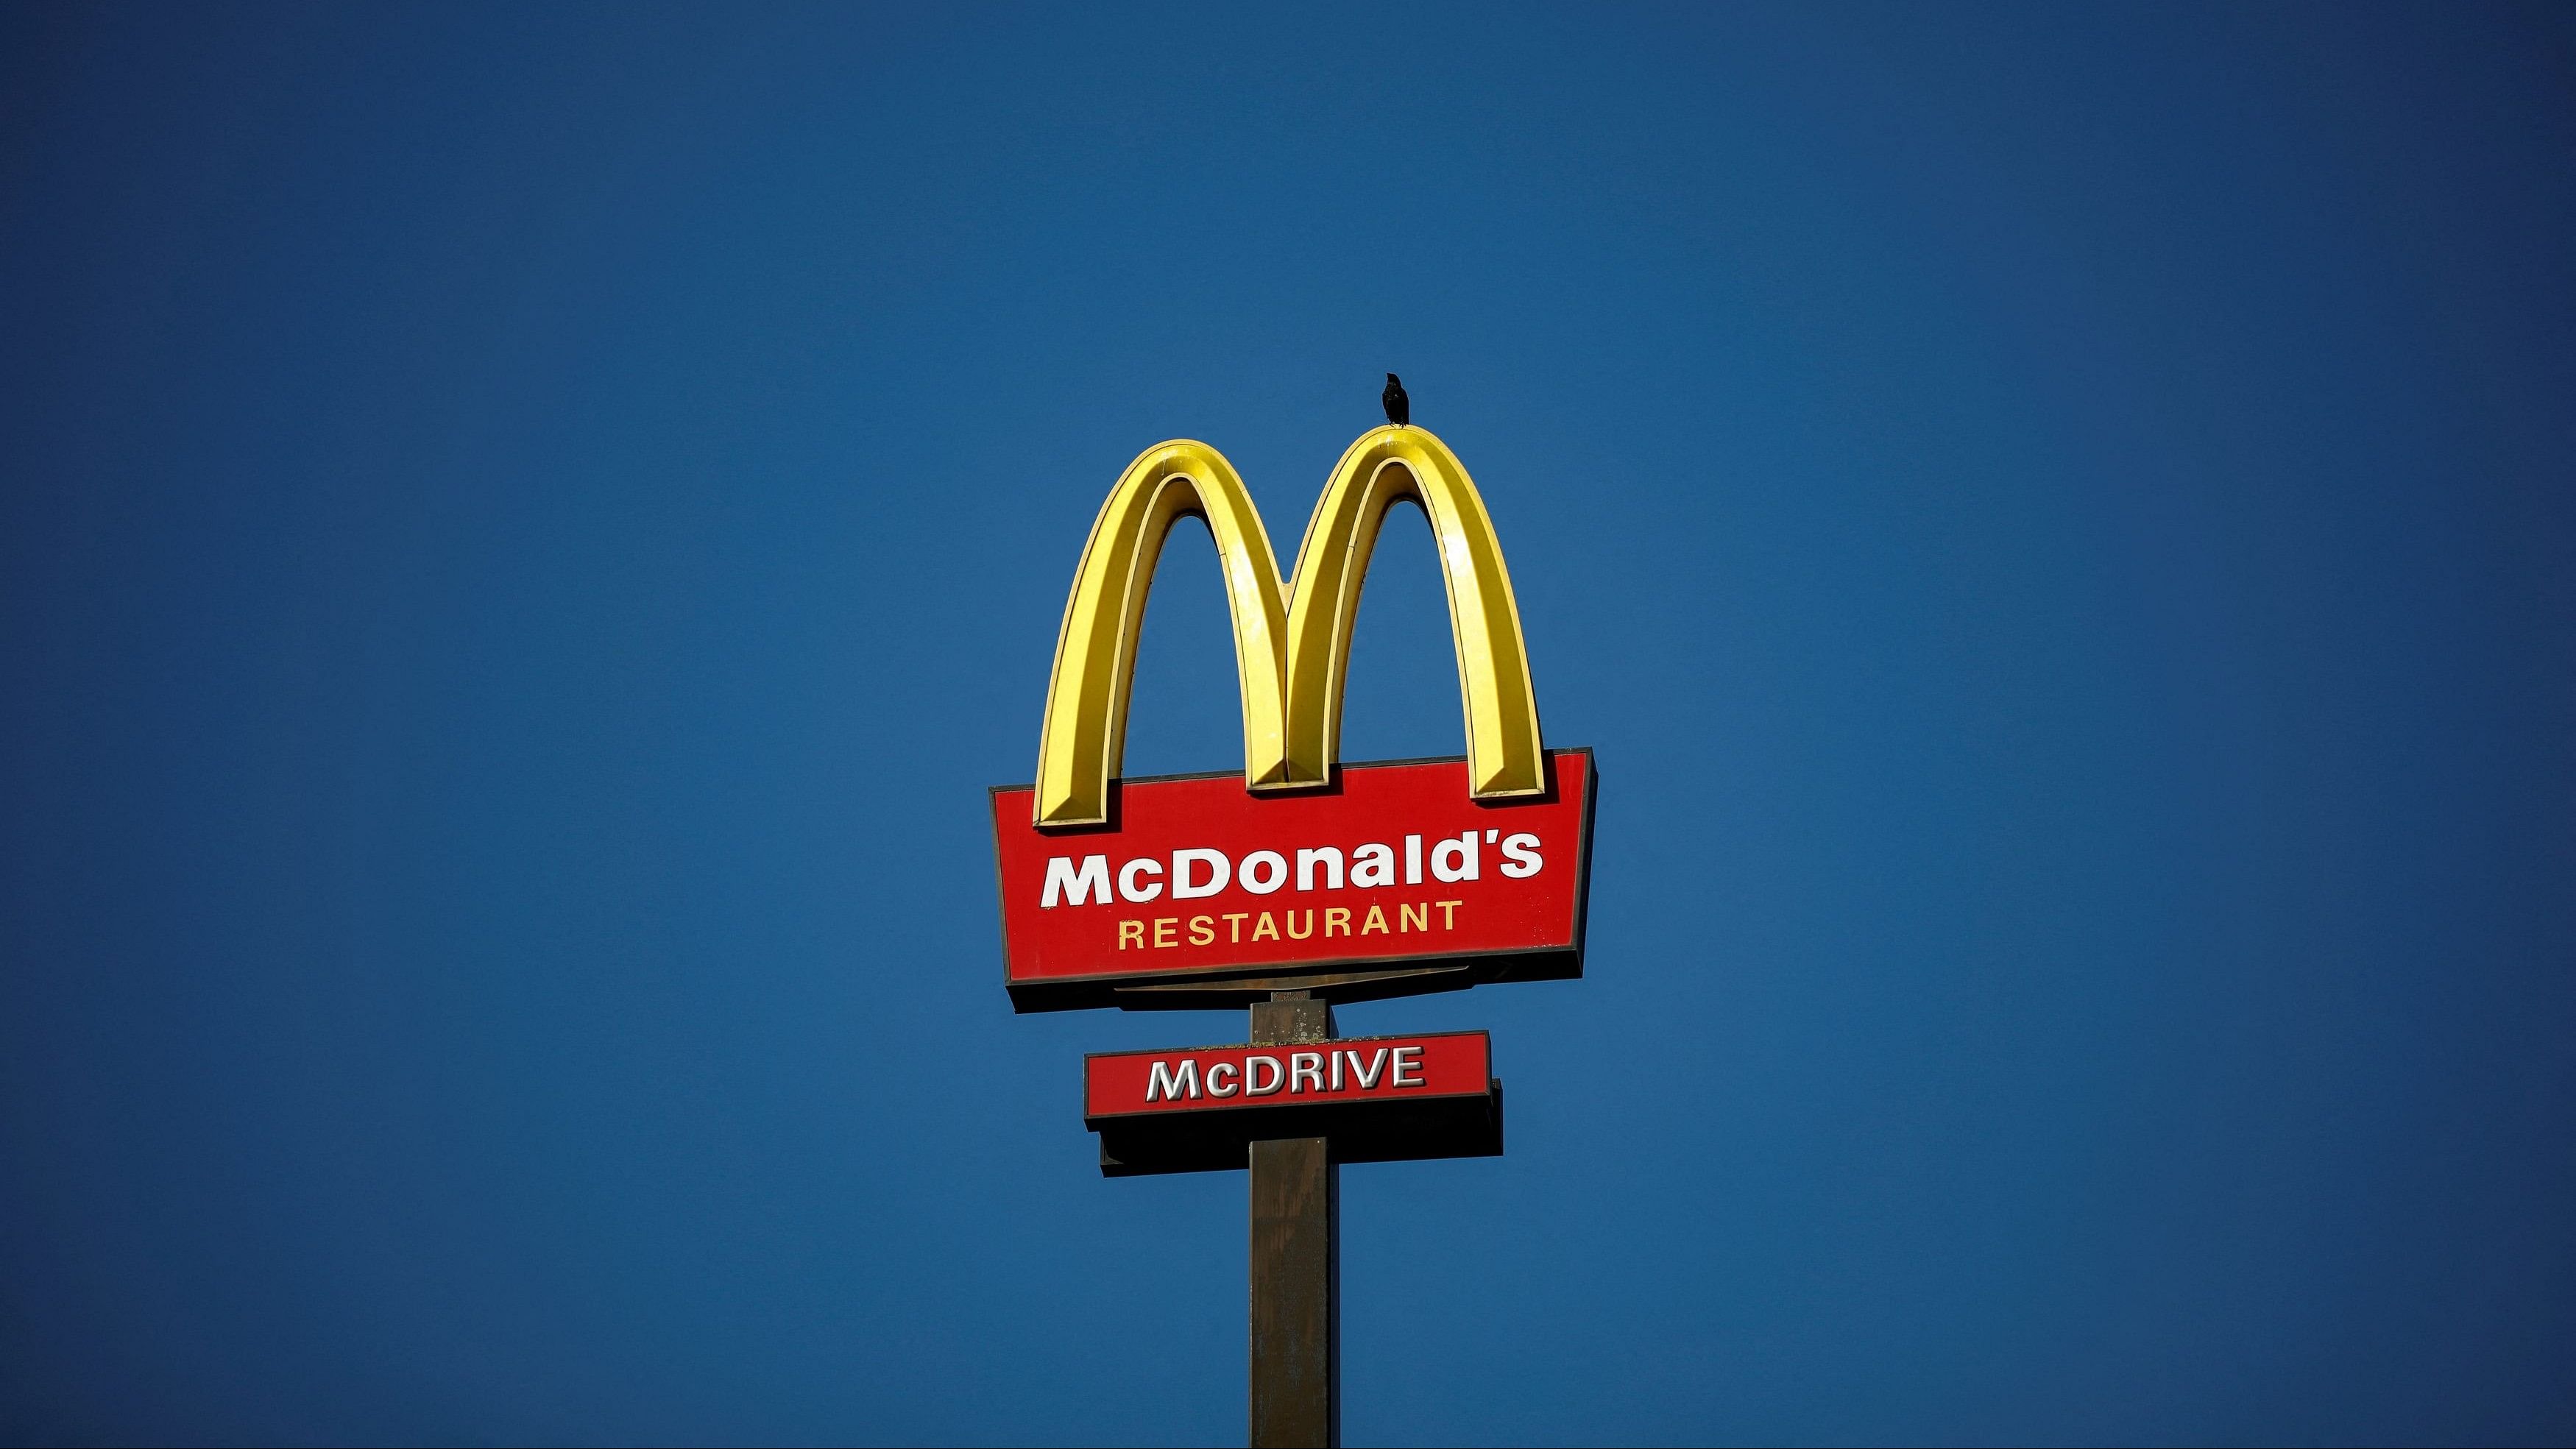 <div class="paragraphs"><p>McDonald's company logo.</p></div>